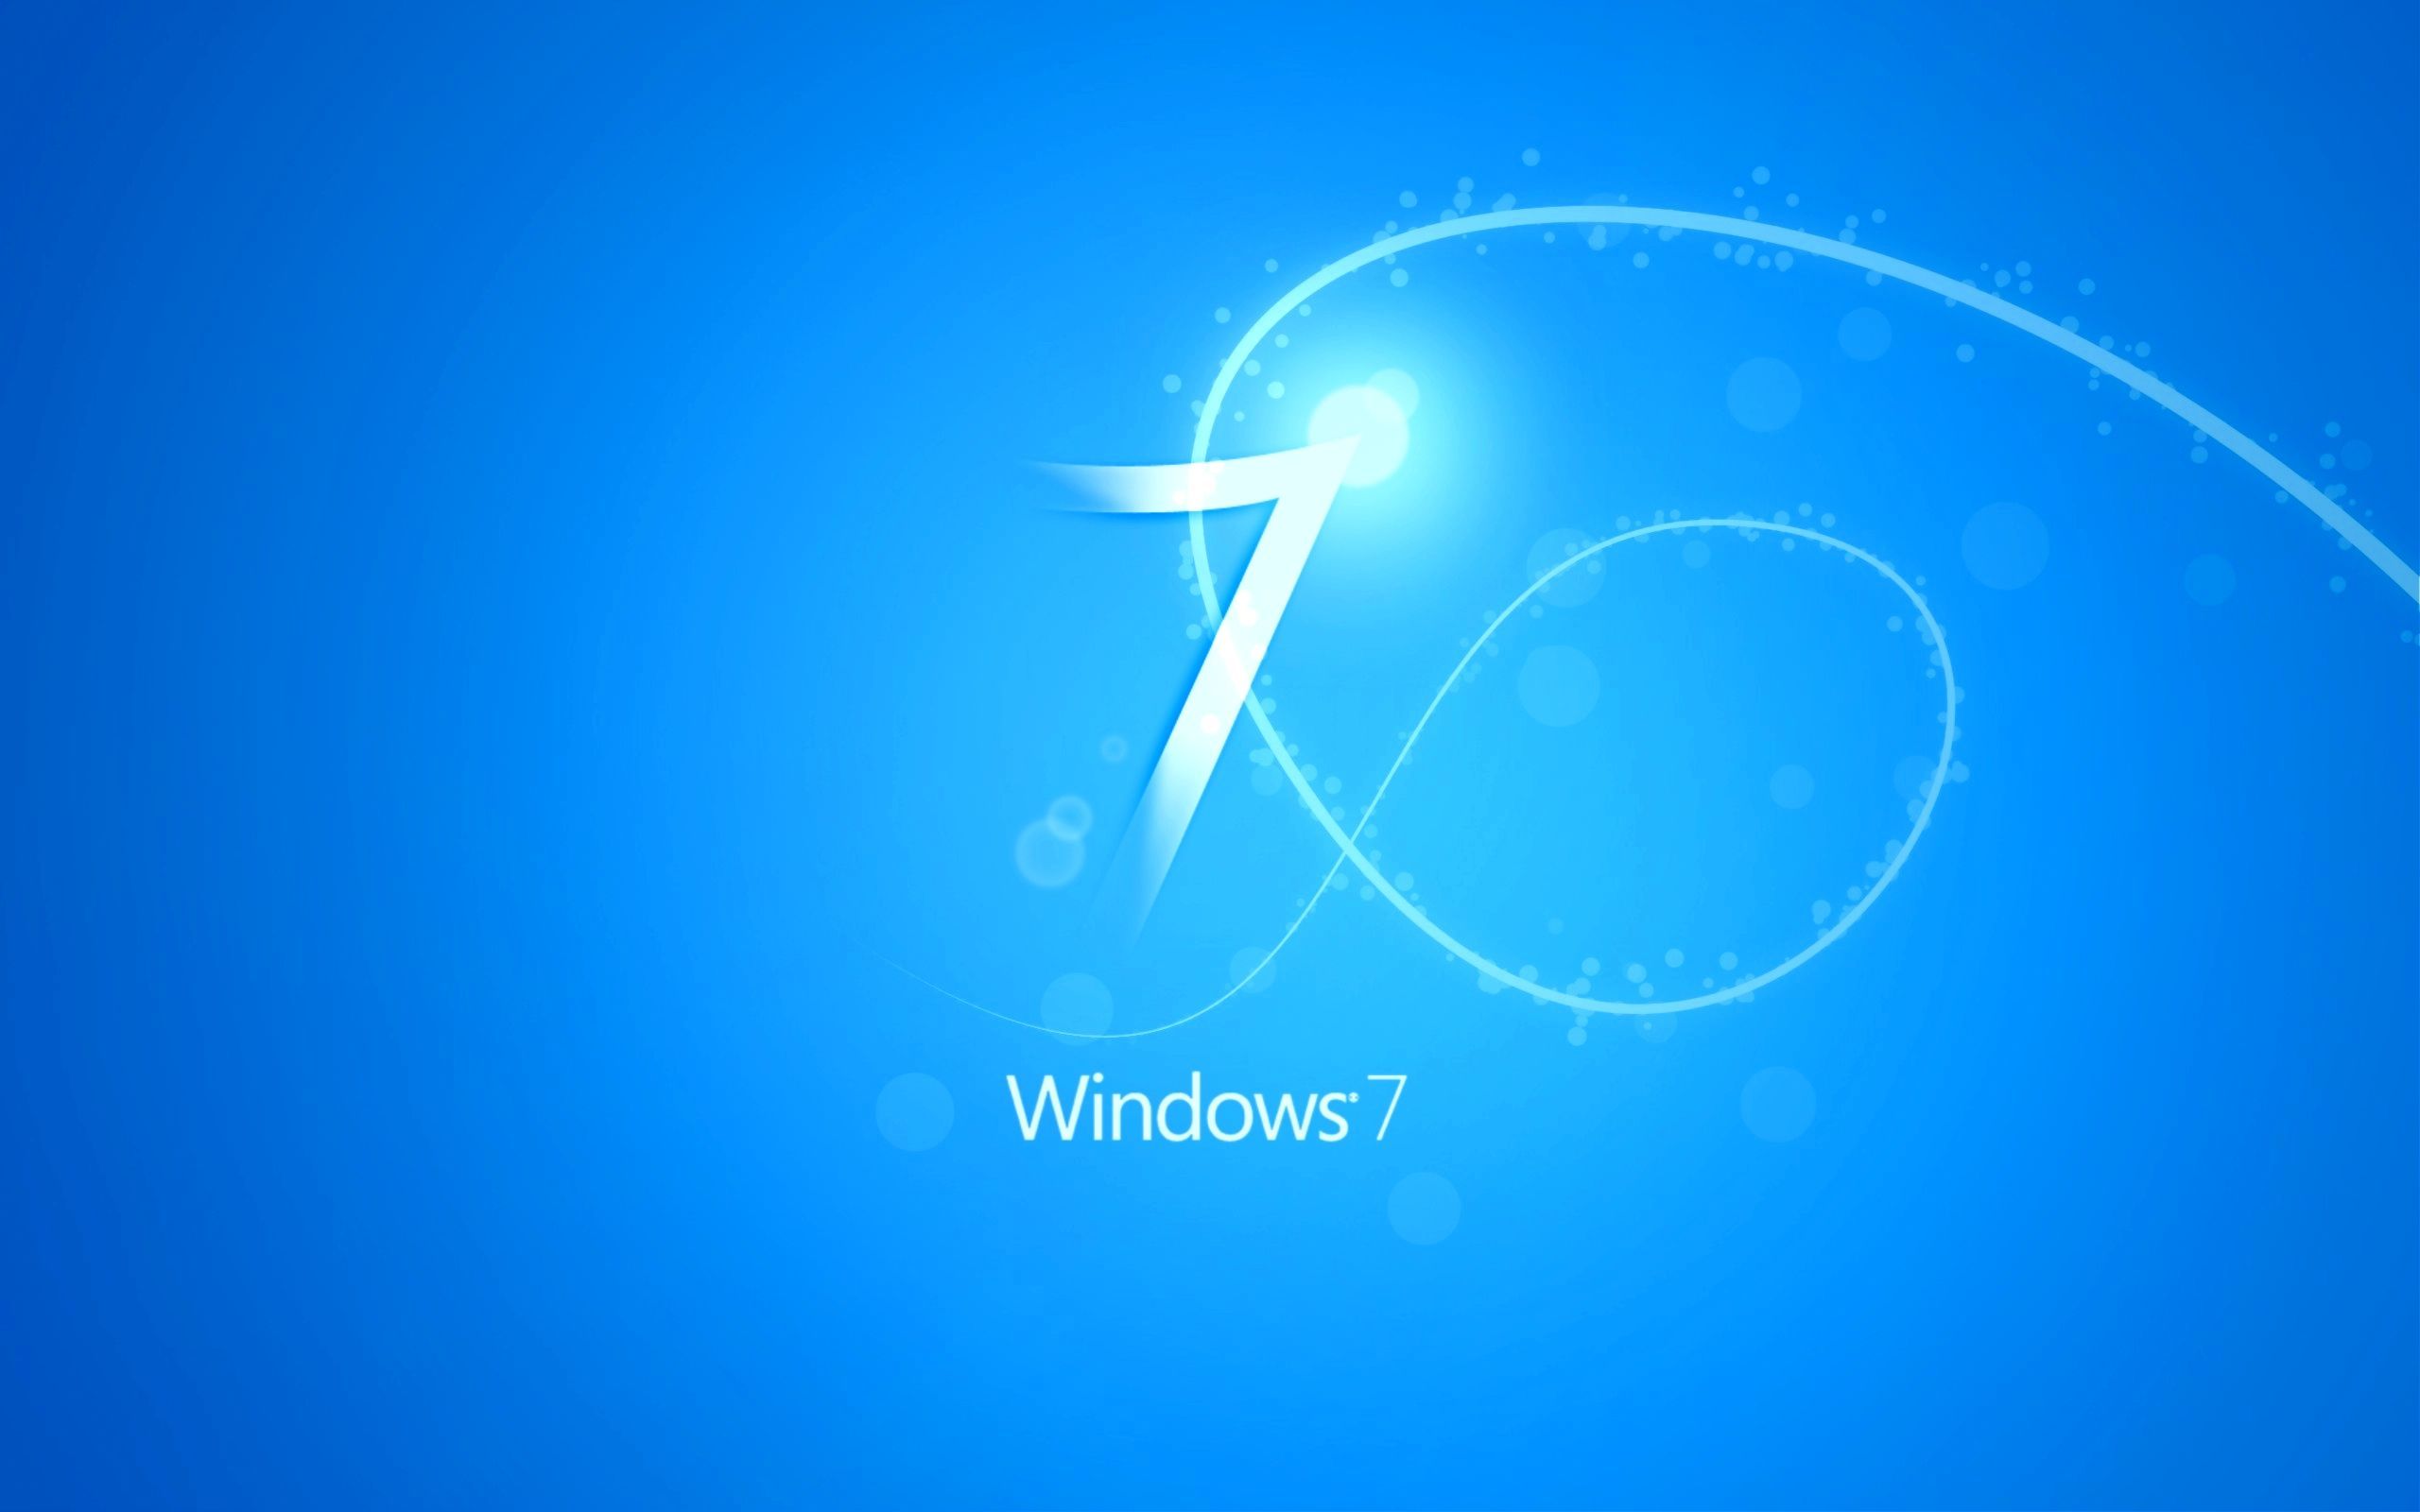 Windows 7 Blue Wallpaper by killer7ben